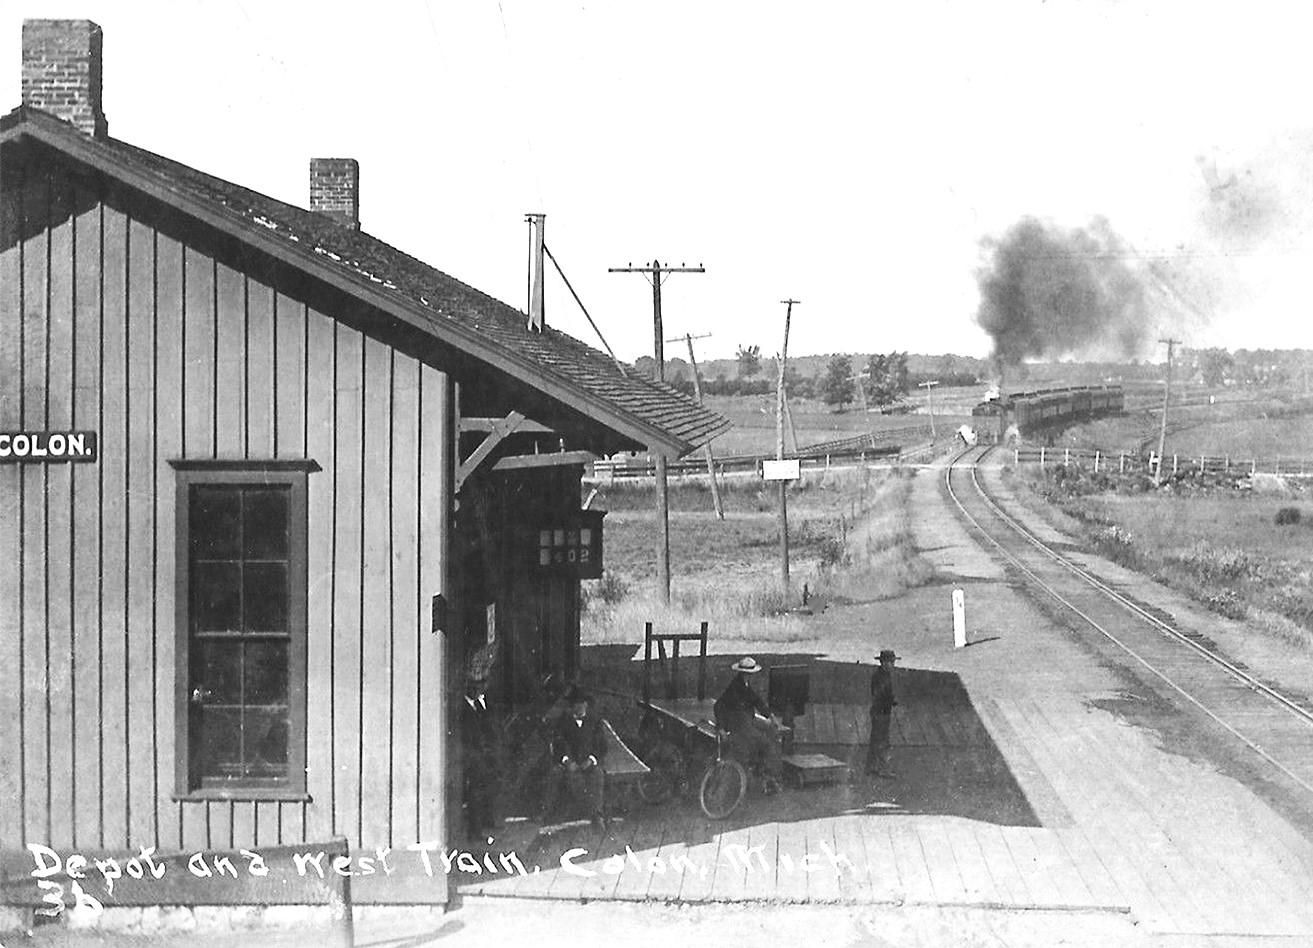 MC Colon Depot and Train